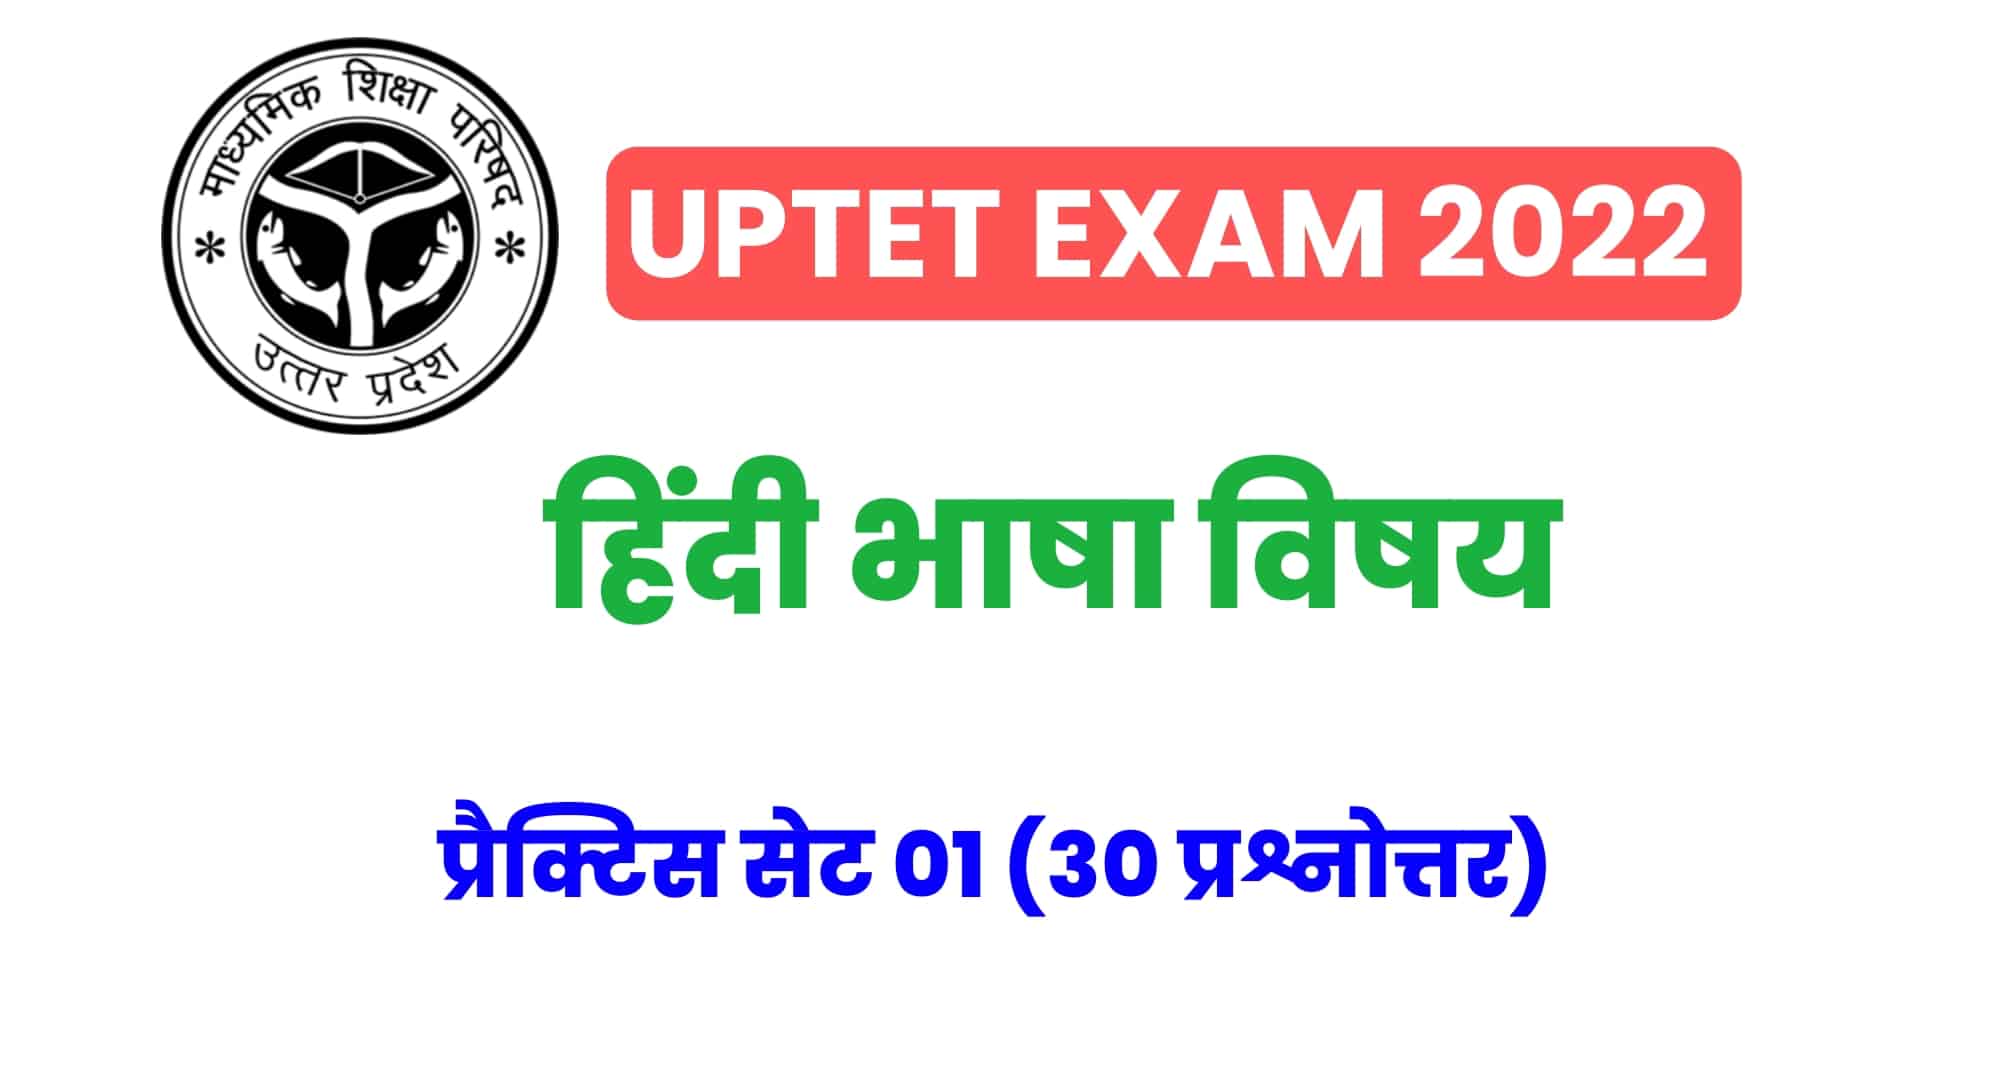 UPTET हिंदी विषय प्रैक्टिस सेट 01 : UPTET की परीक्षा में कई बार पूछे गए इन प्रश्नों को जरूर पढ़ें